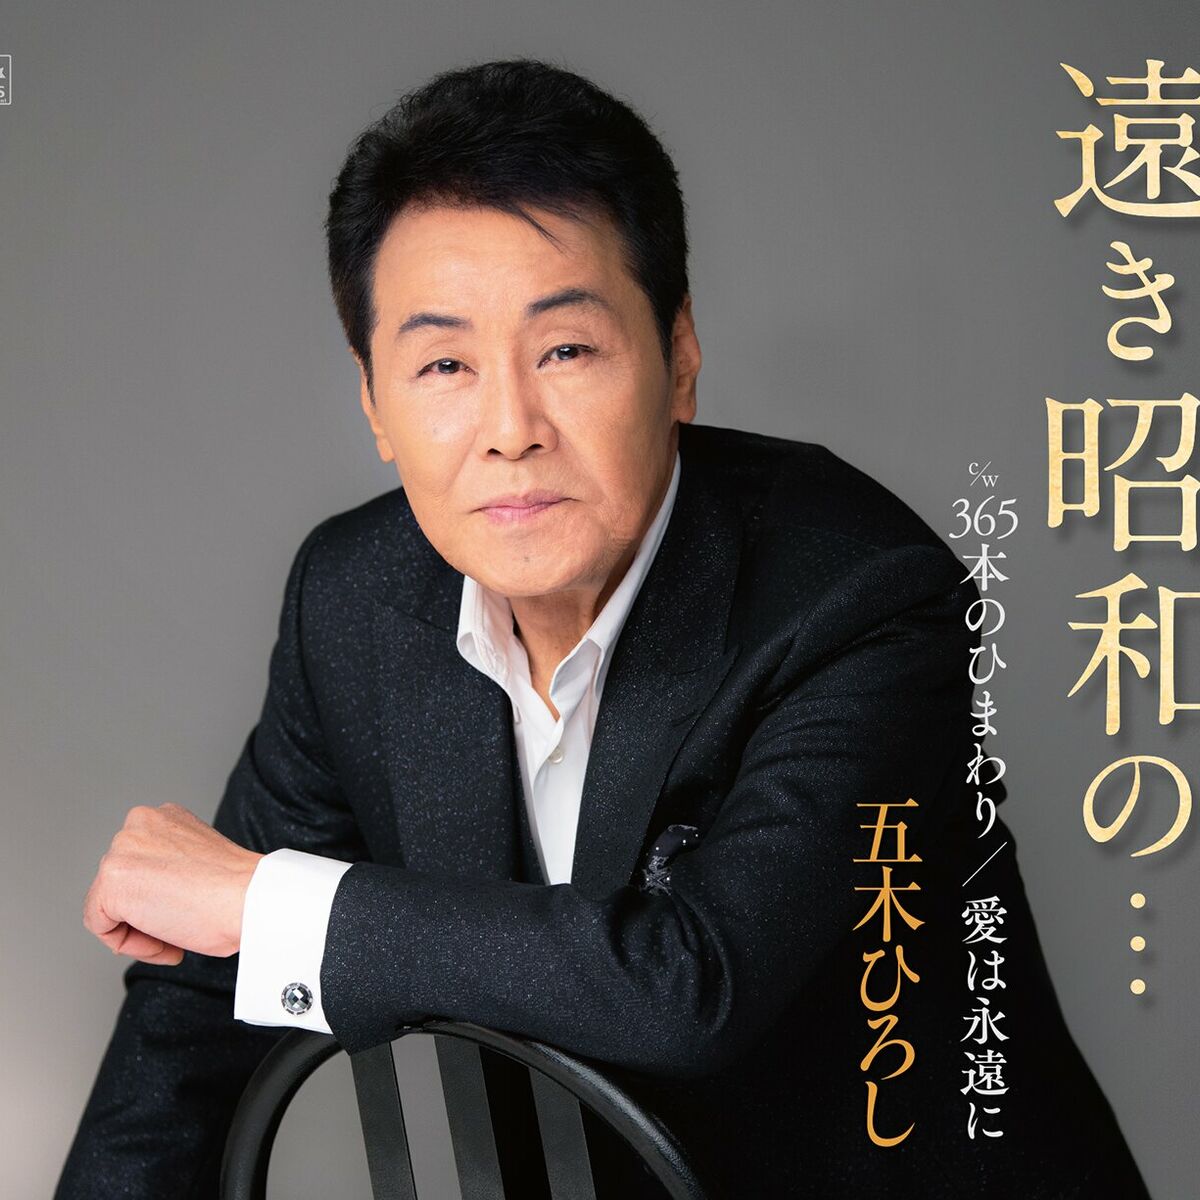 Hiroshi Itsuki: albums